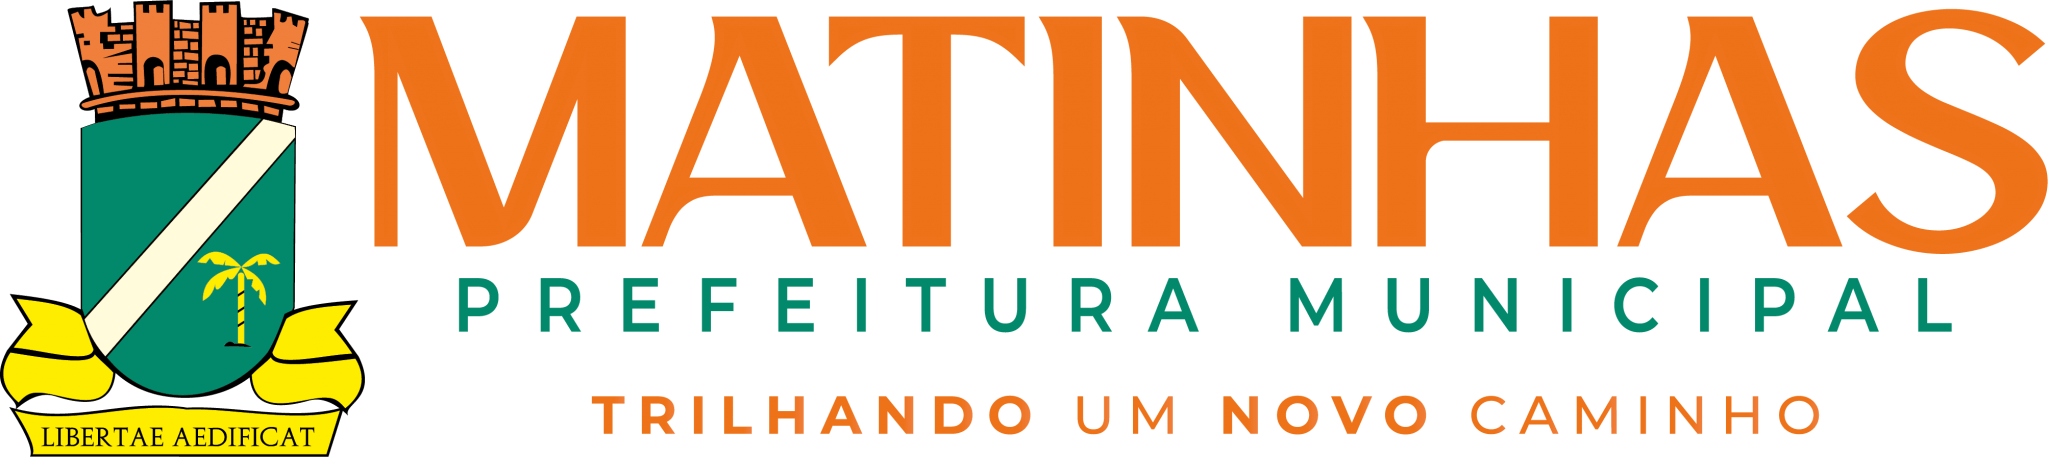 Prefeitura Municipal de Matinhas